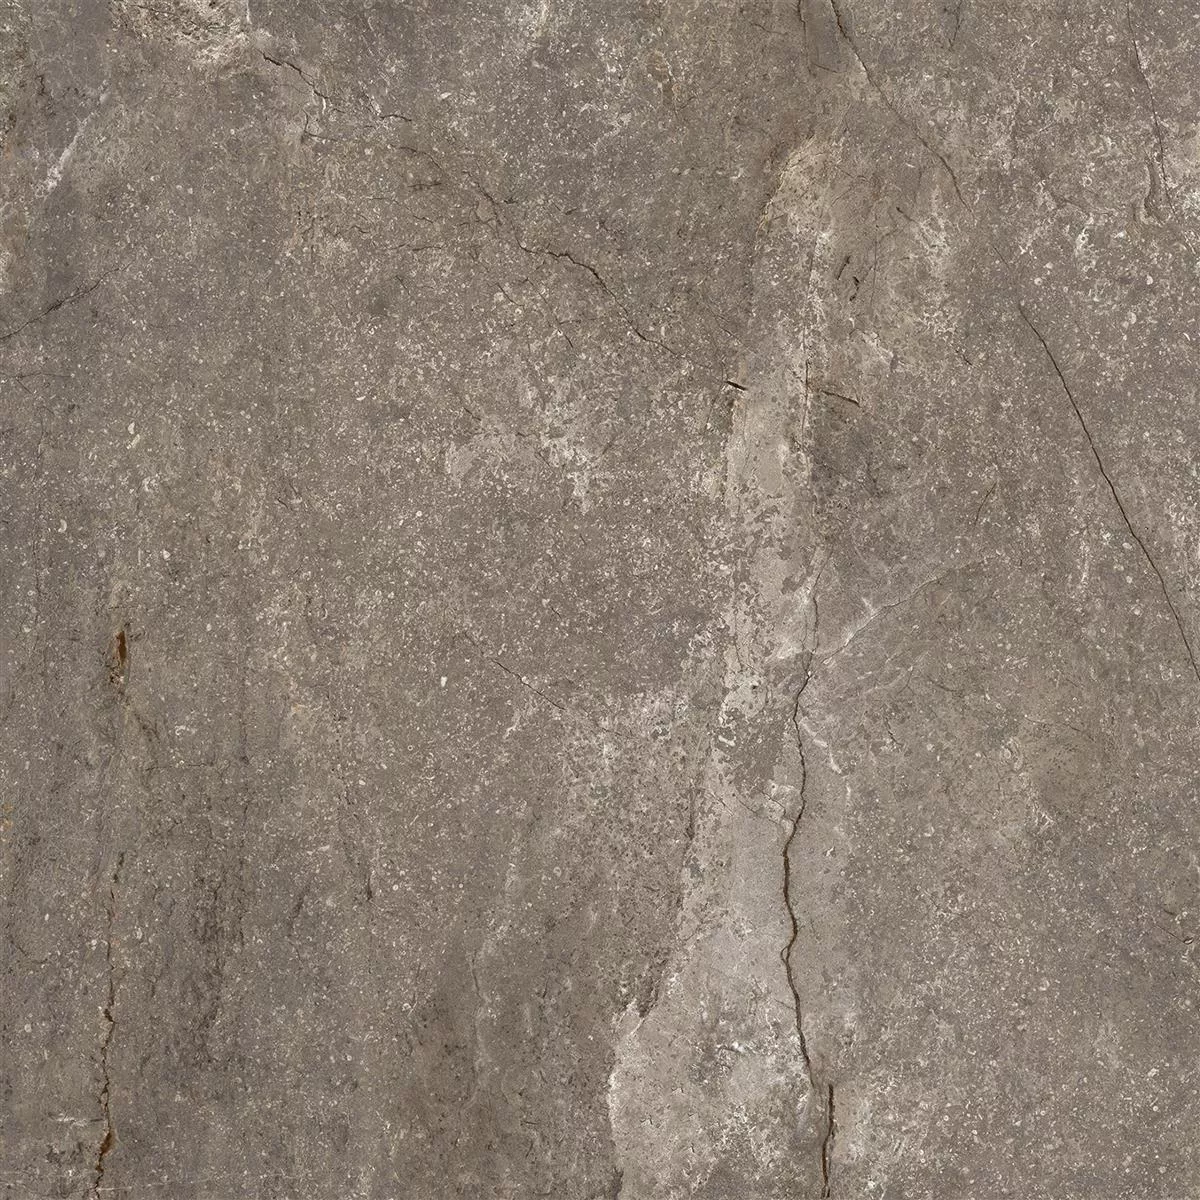 Πρότυπο από Πλακάκια Δαπέδου Pangea Μαρμάρινη Όψη Αμεμπτος Mokka 60x60cm